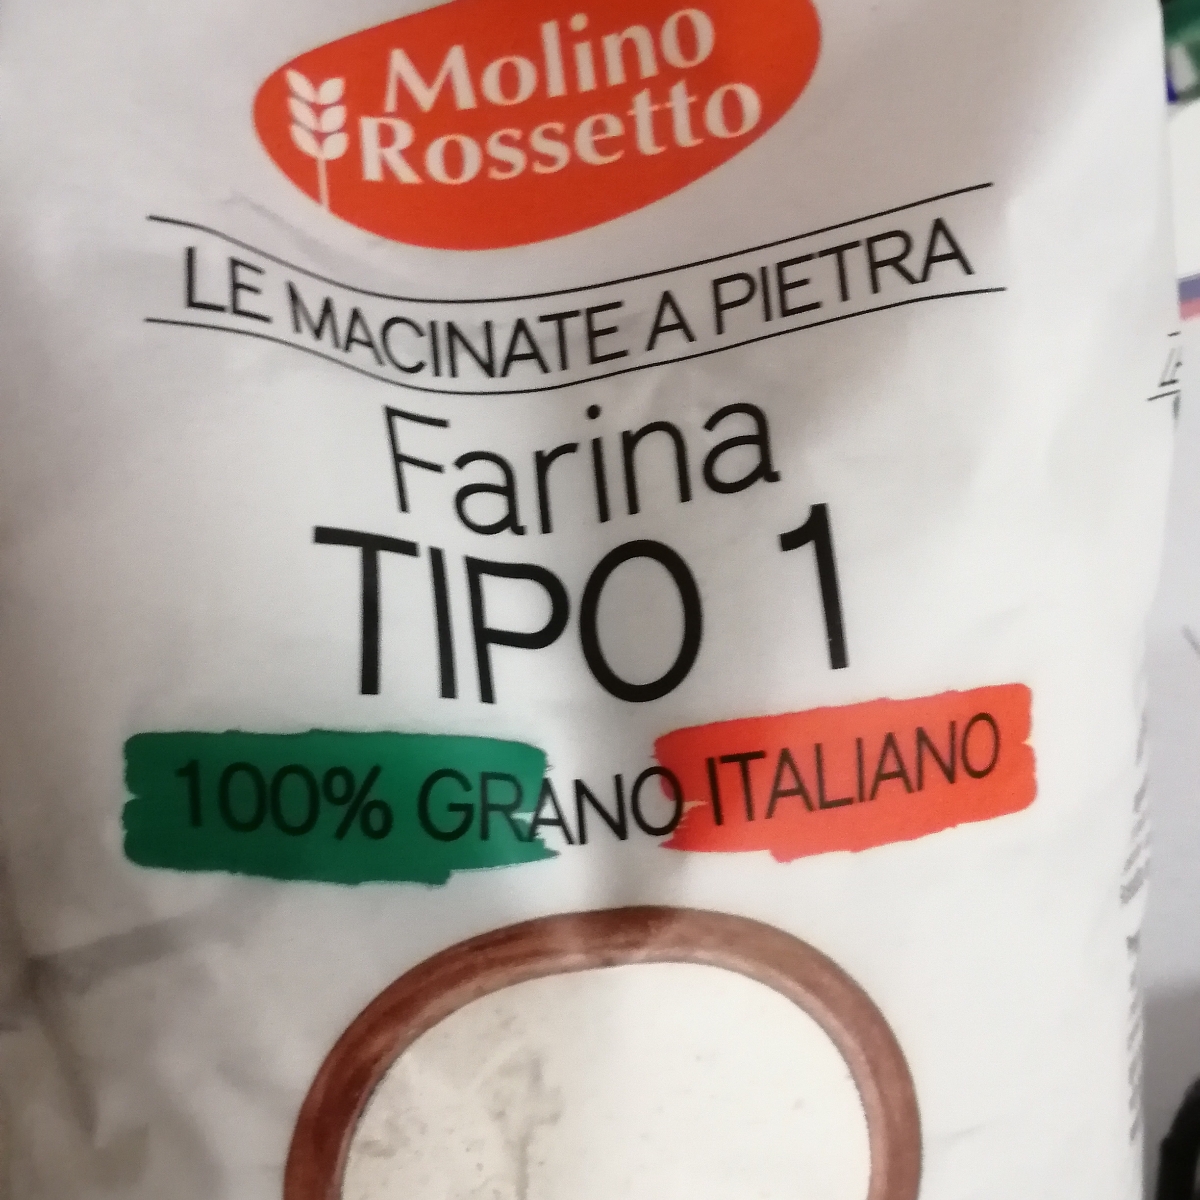 Molino Rossetto Farina Tipo 1 Reviews | abillion